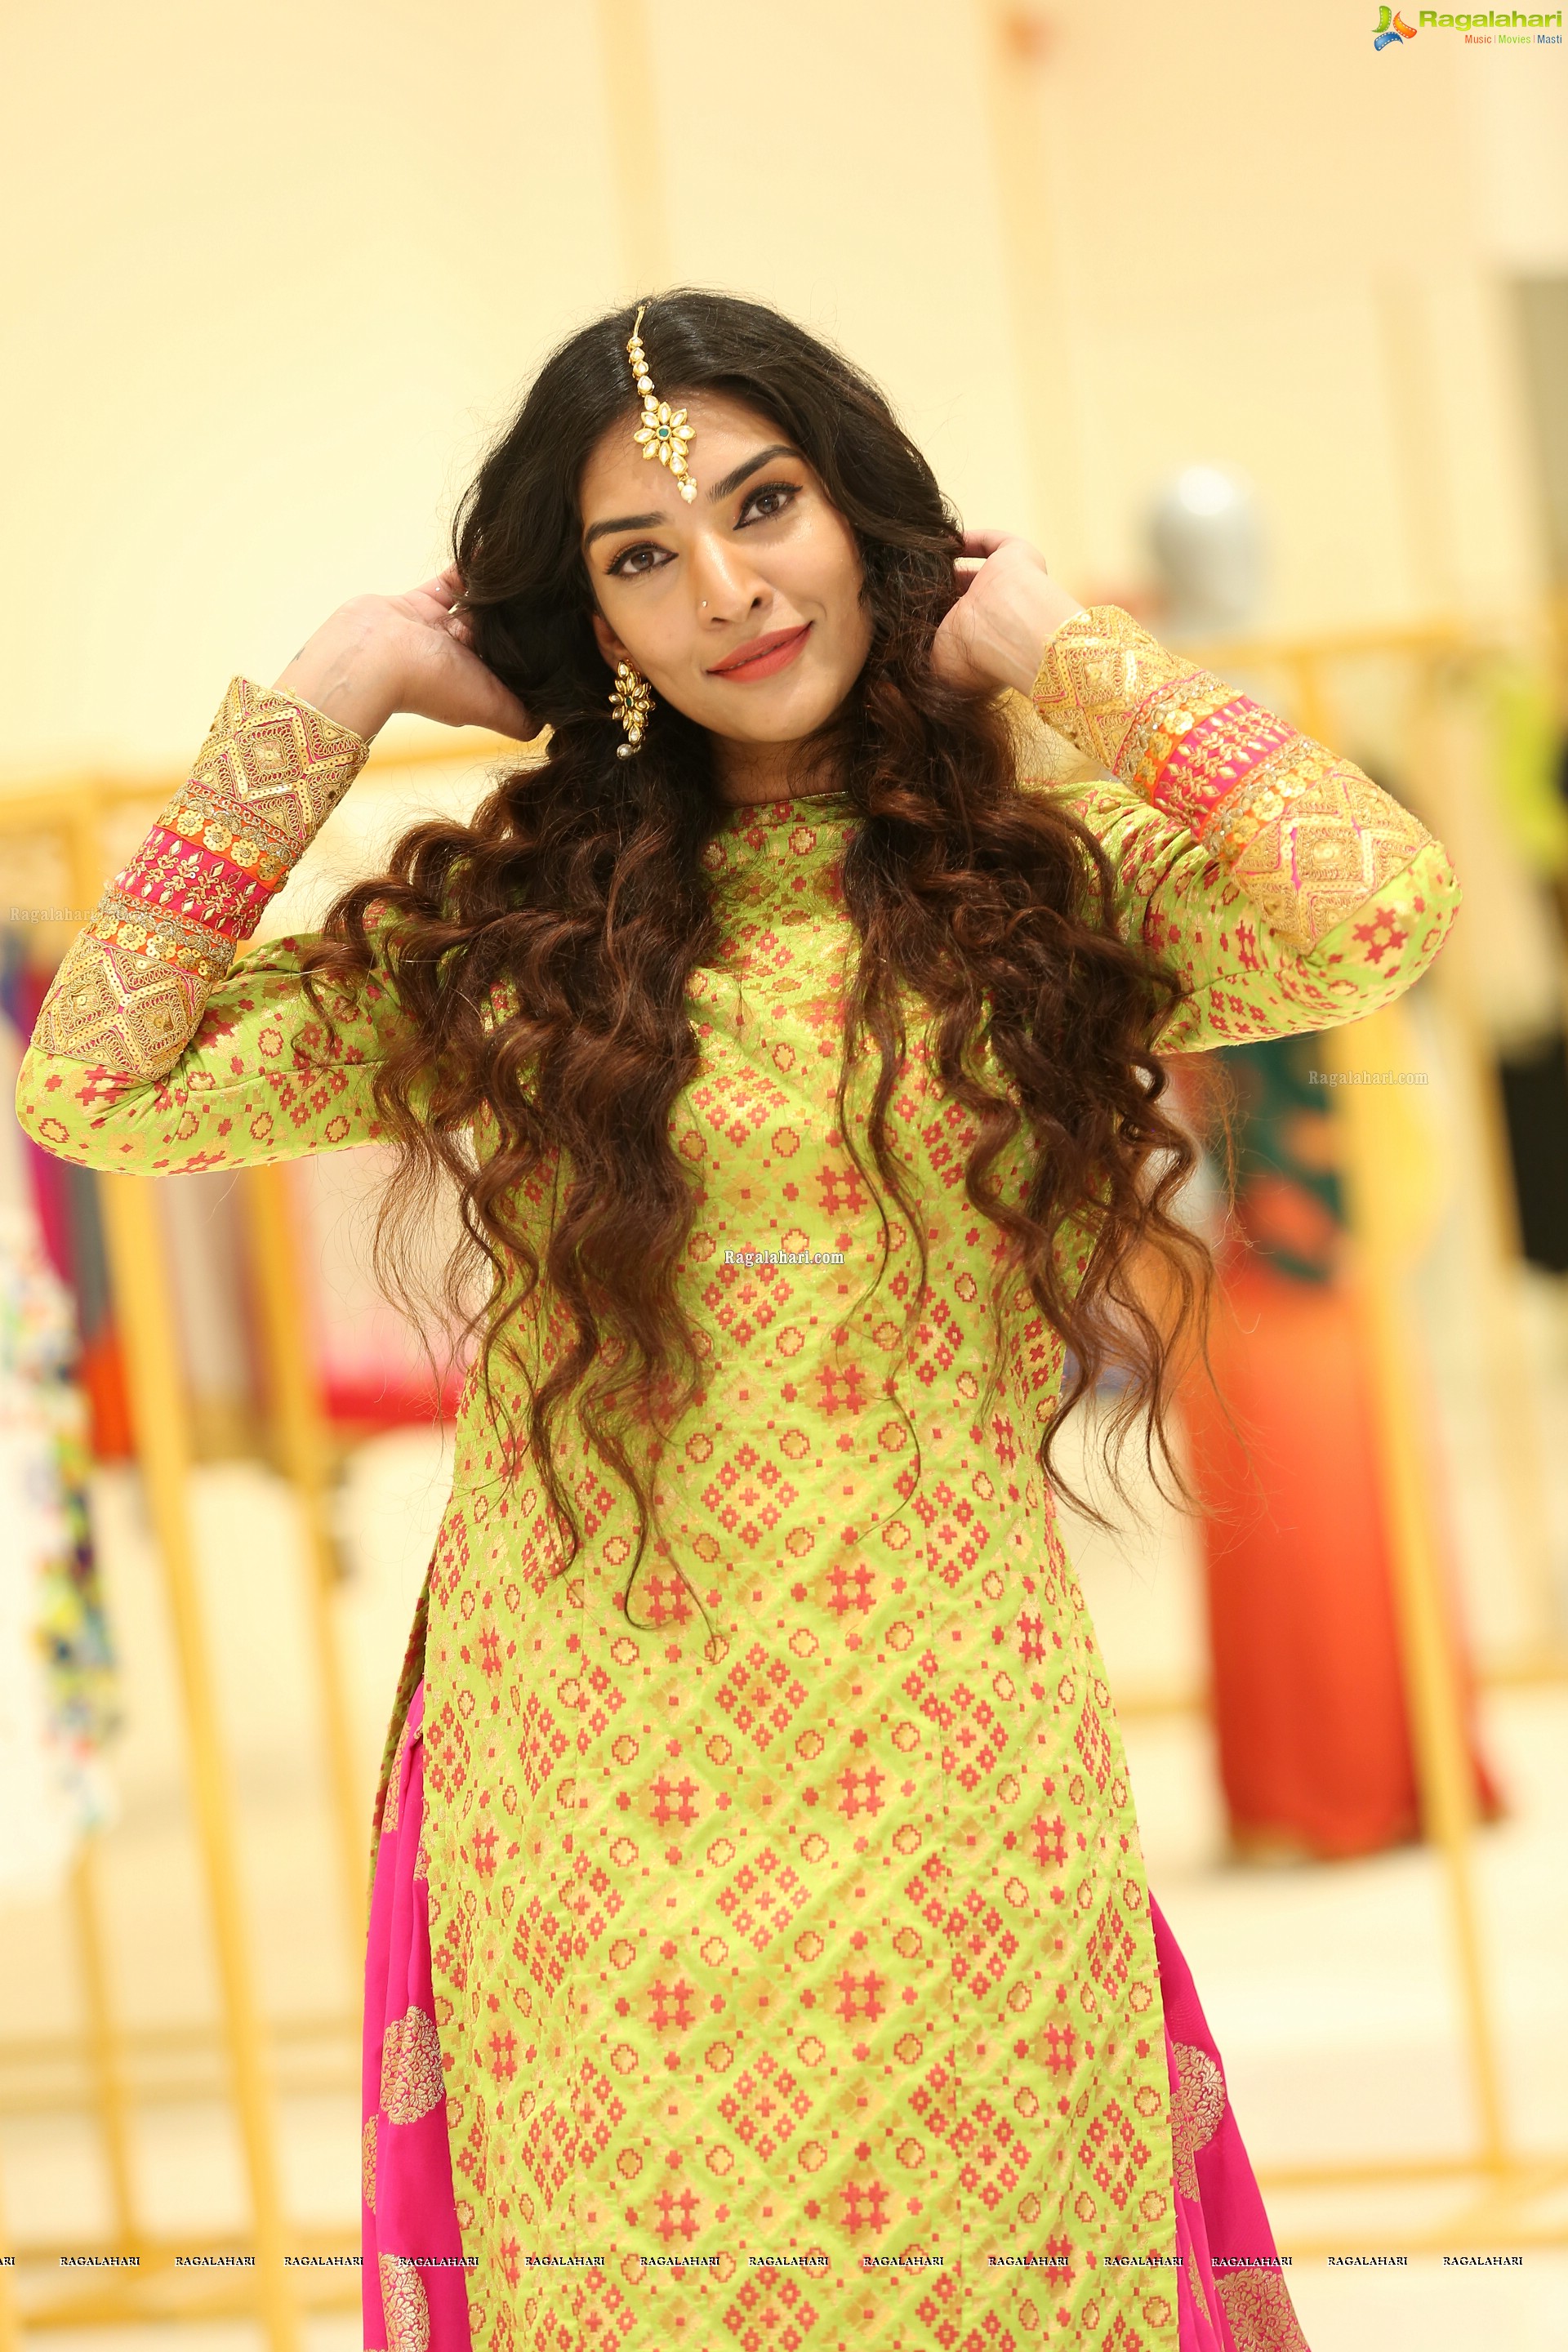 Supraja Narayan at Atelier Fashion Showcase at Sarath City Mall - HD Gallery